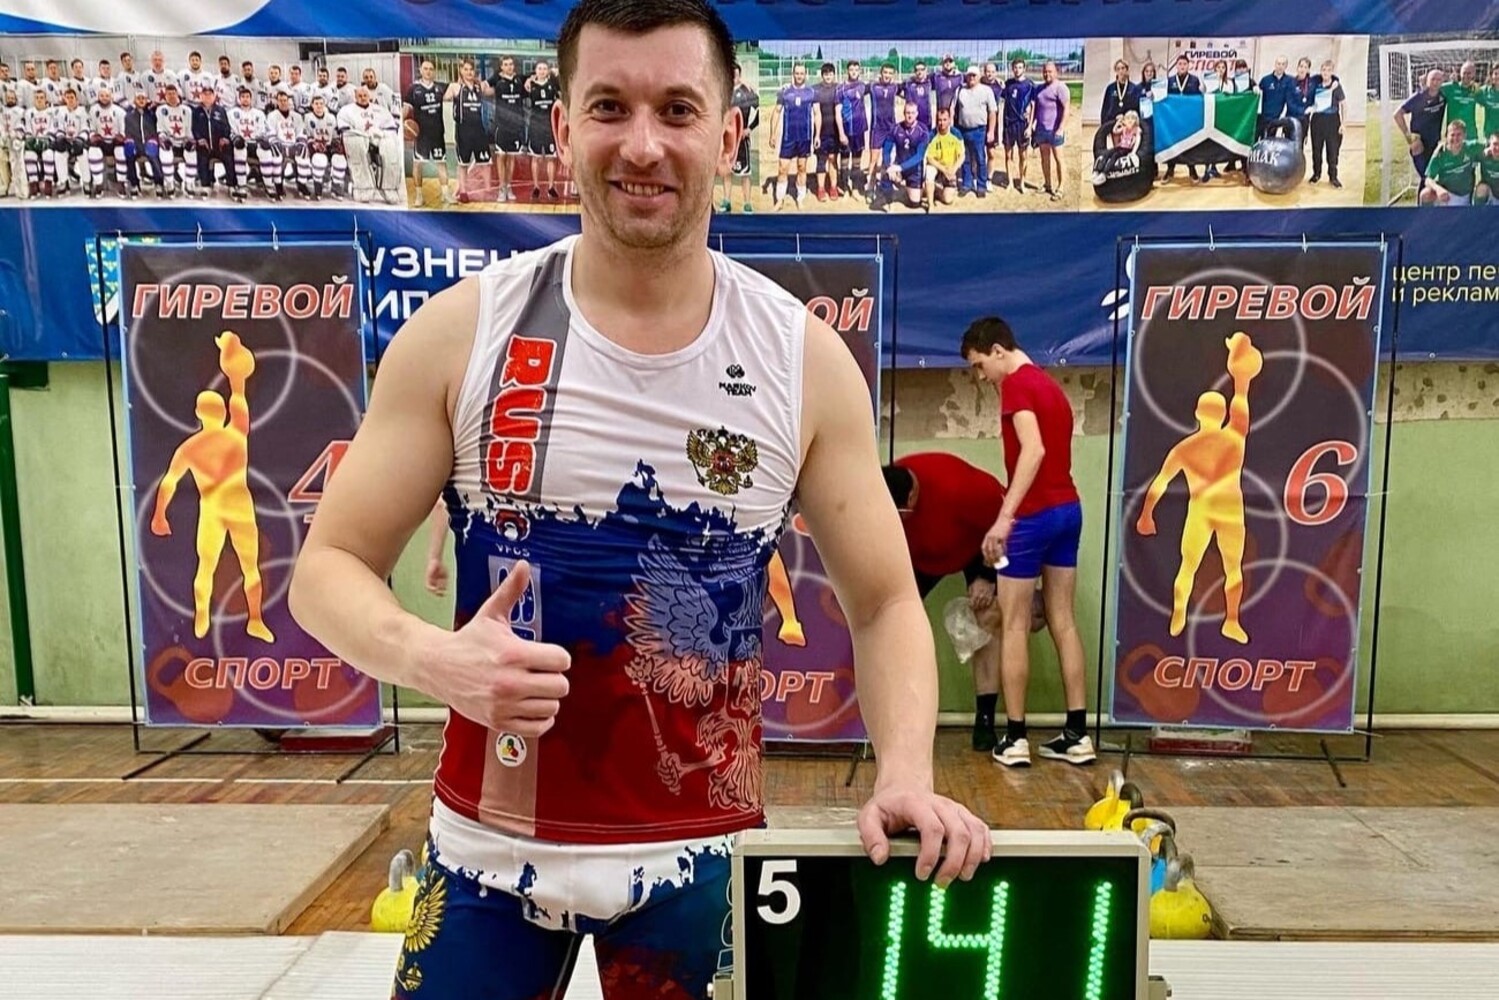 Сотрудник разреза Пермяковский установил новый личный рекорд в гиревом спорте. Стройсервис